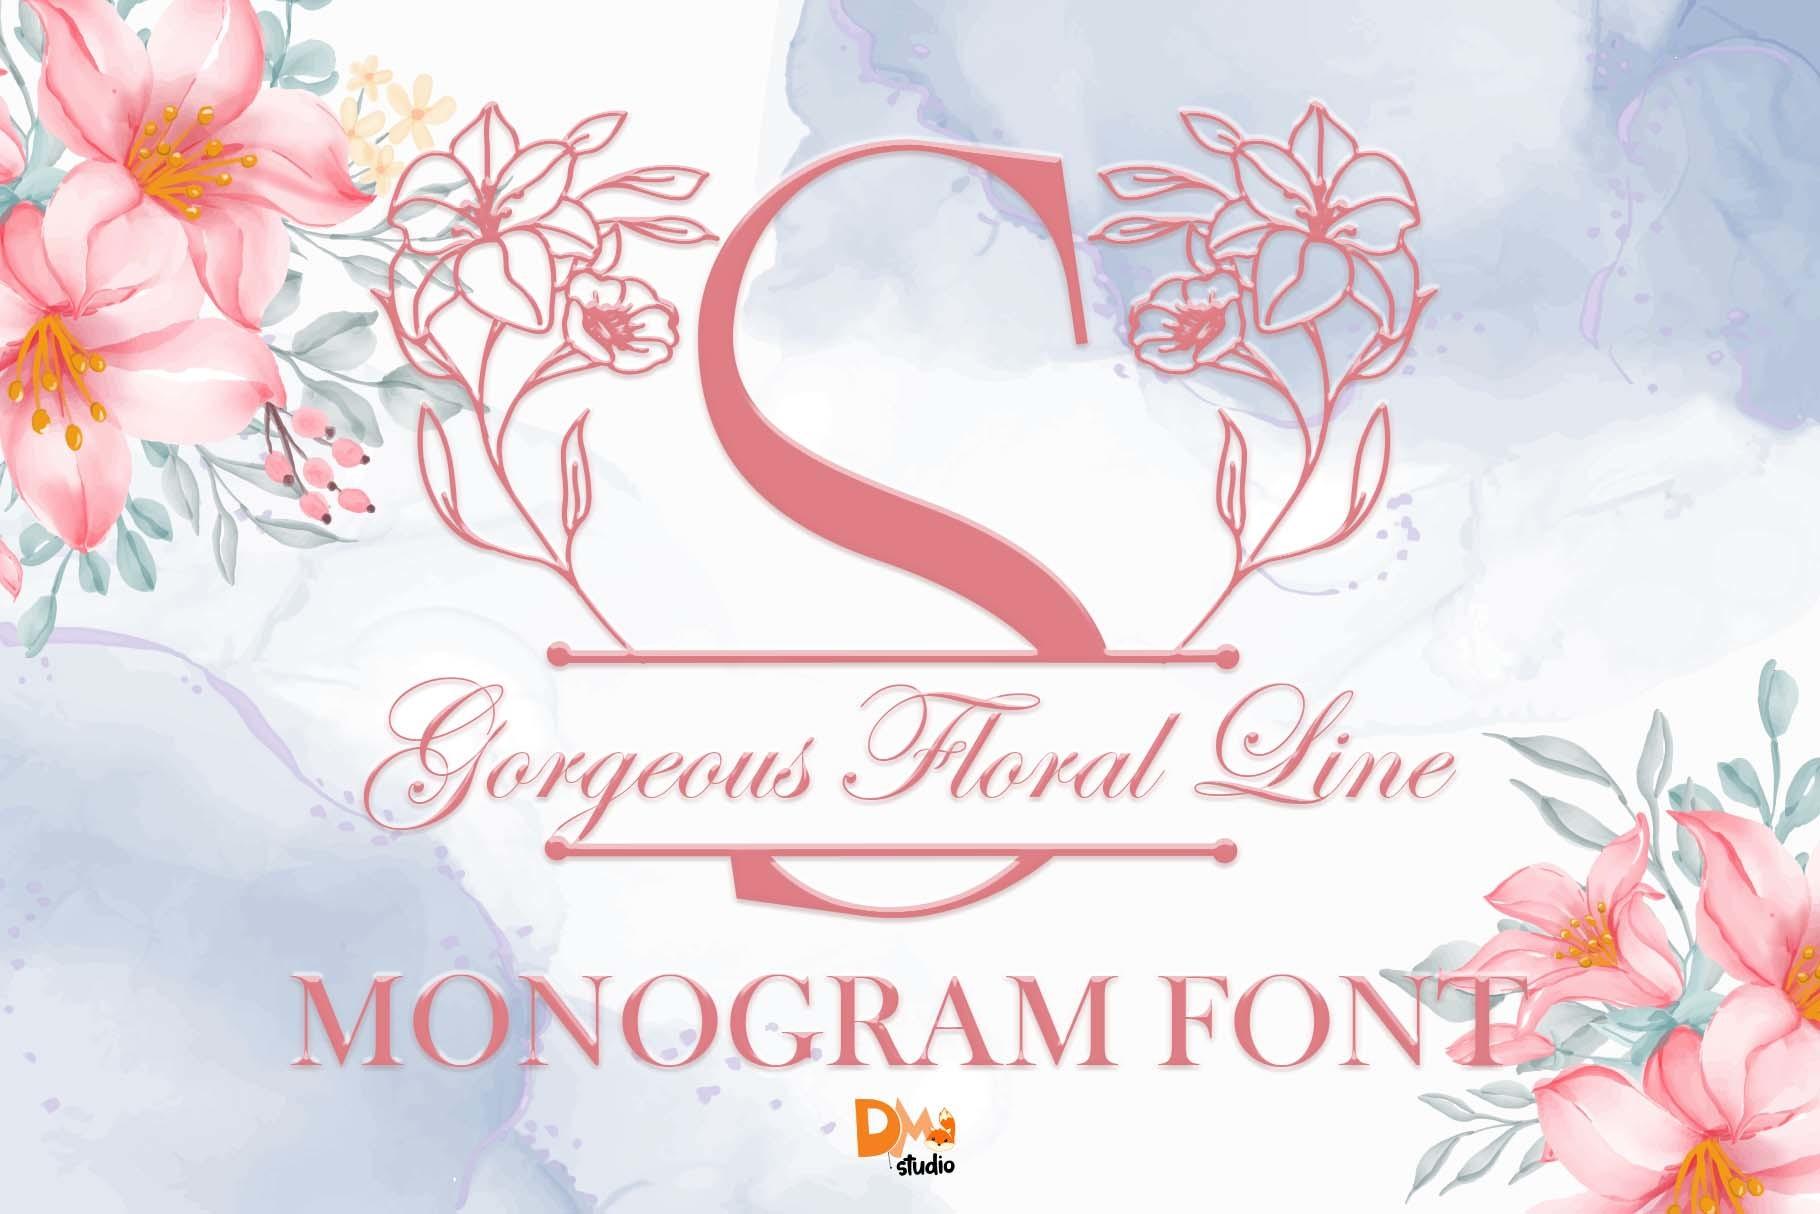 Gorgeous Floral Line Monogram Font